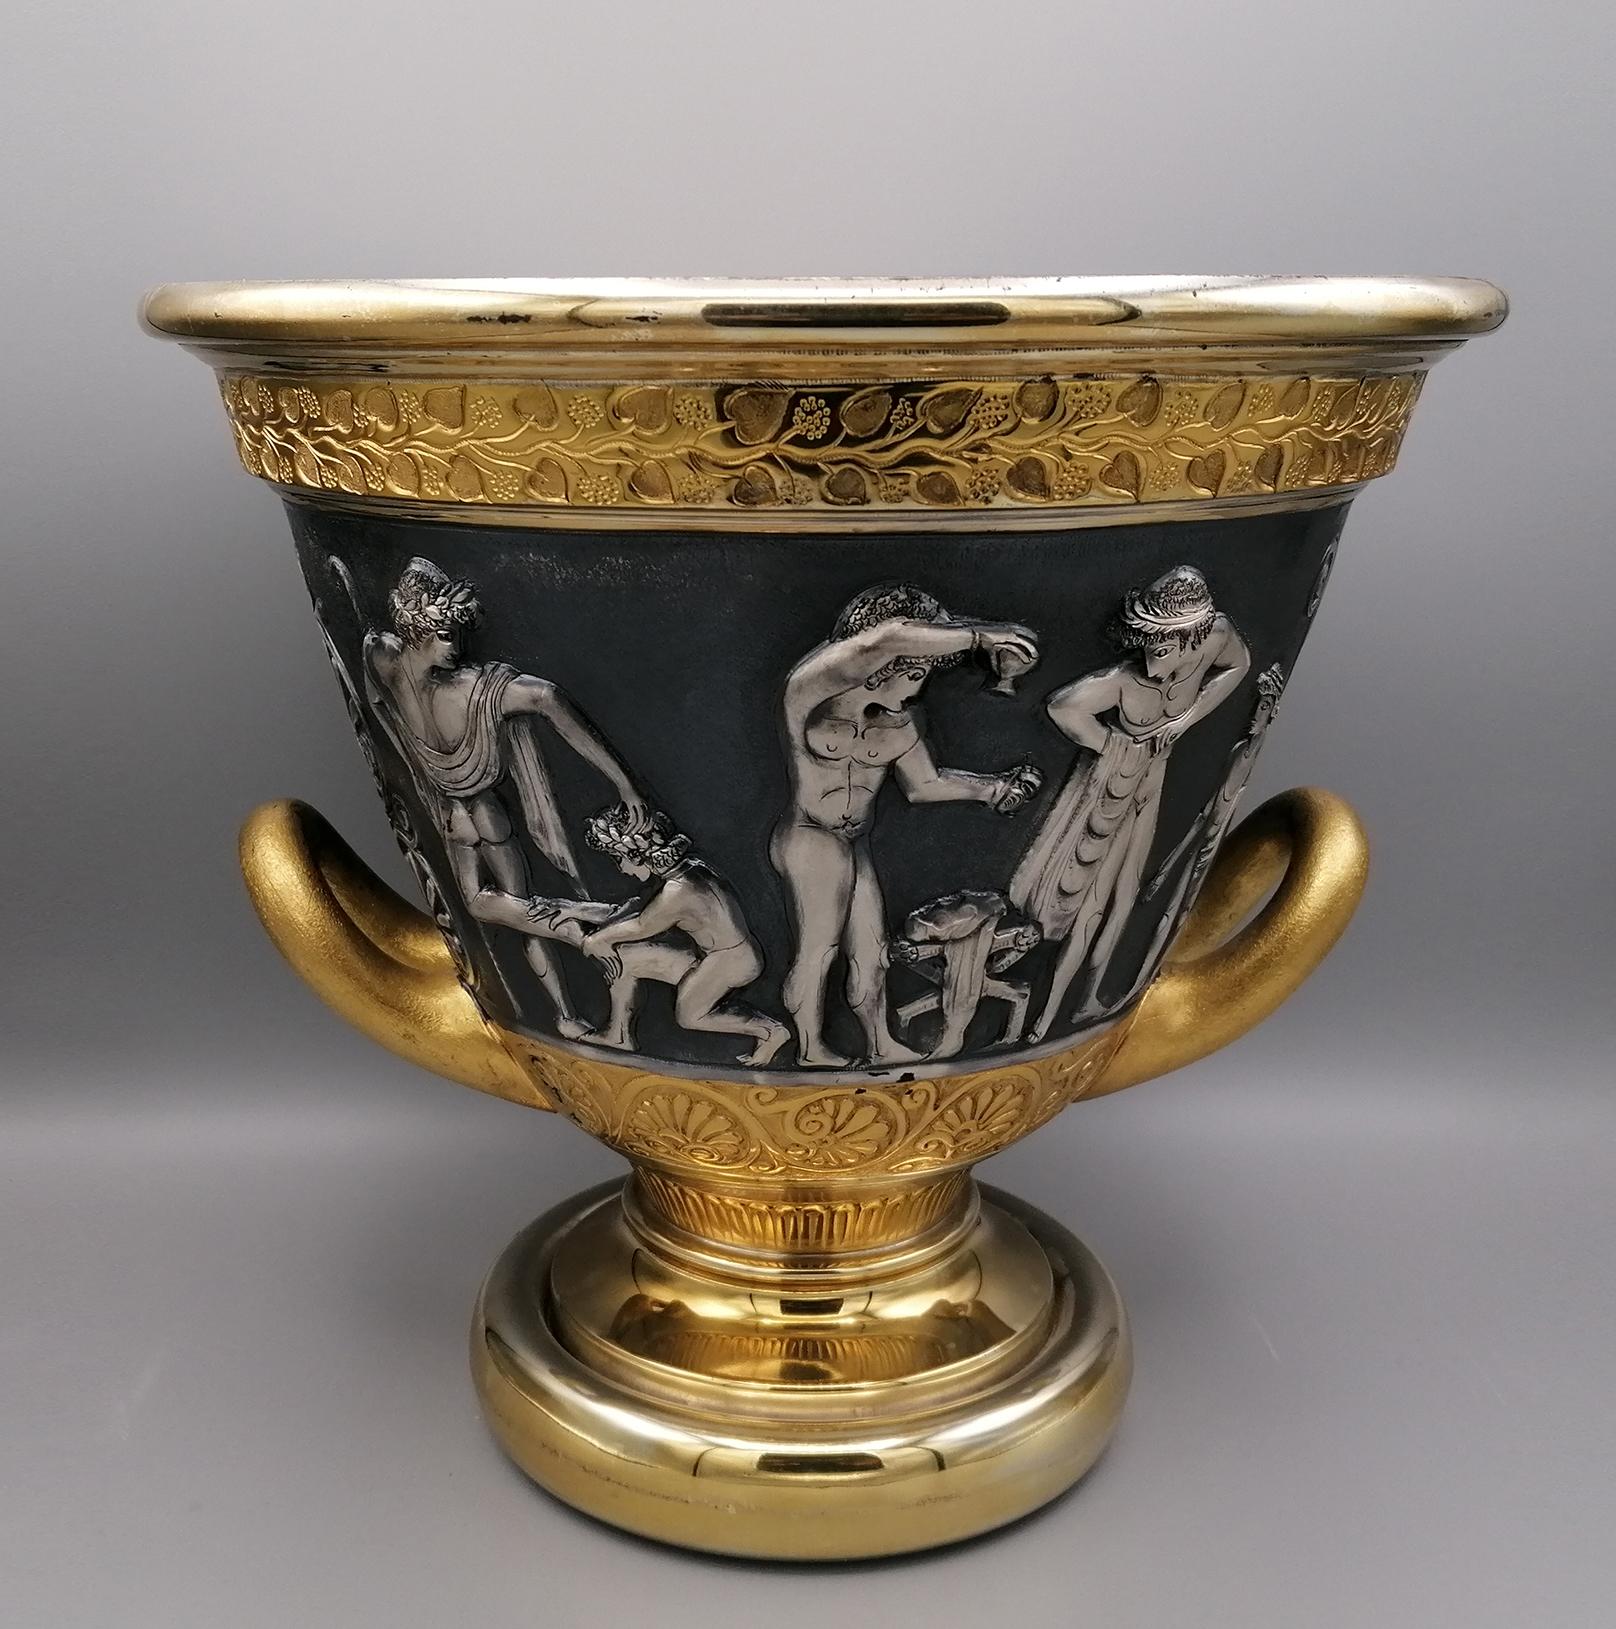 Vase im etruskischen Stil mit Griffen aus Silber, komplett handgefertigt in Italien aus massivem 800er Silber.
Die Prägung und der Meißel stellen Szenen aus dem etruskischen Leben dar, die auf die vorrömische Zeit zurückgehen.
Der Sockel ist rund